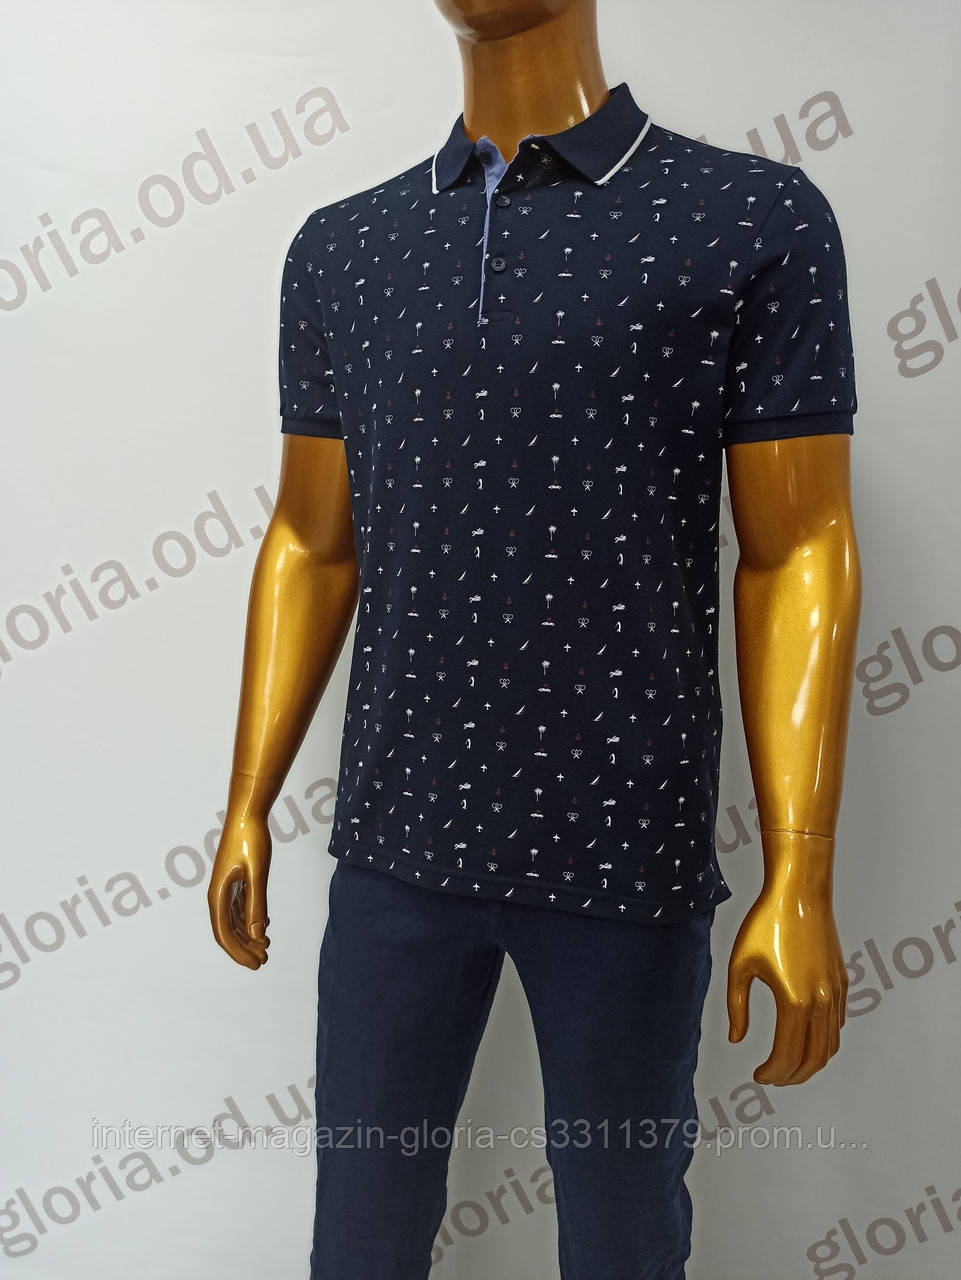 Чоловіча футболка поло Tony Montana. PSL-2405s (tmp241-8). Розміри: M,L,XL,XXL.